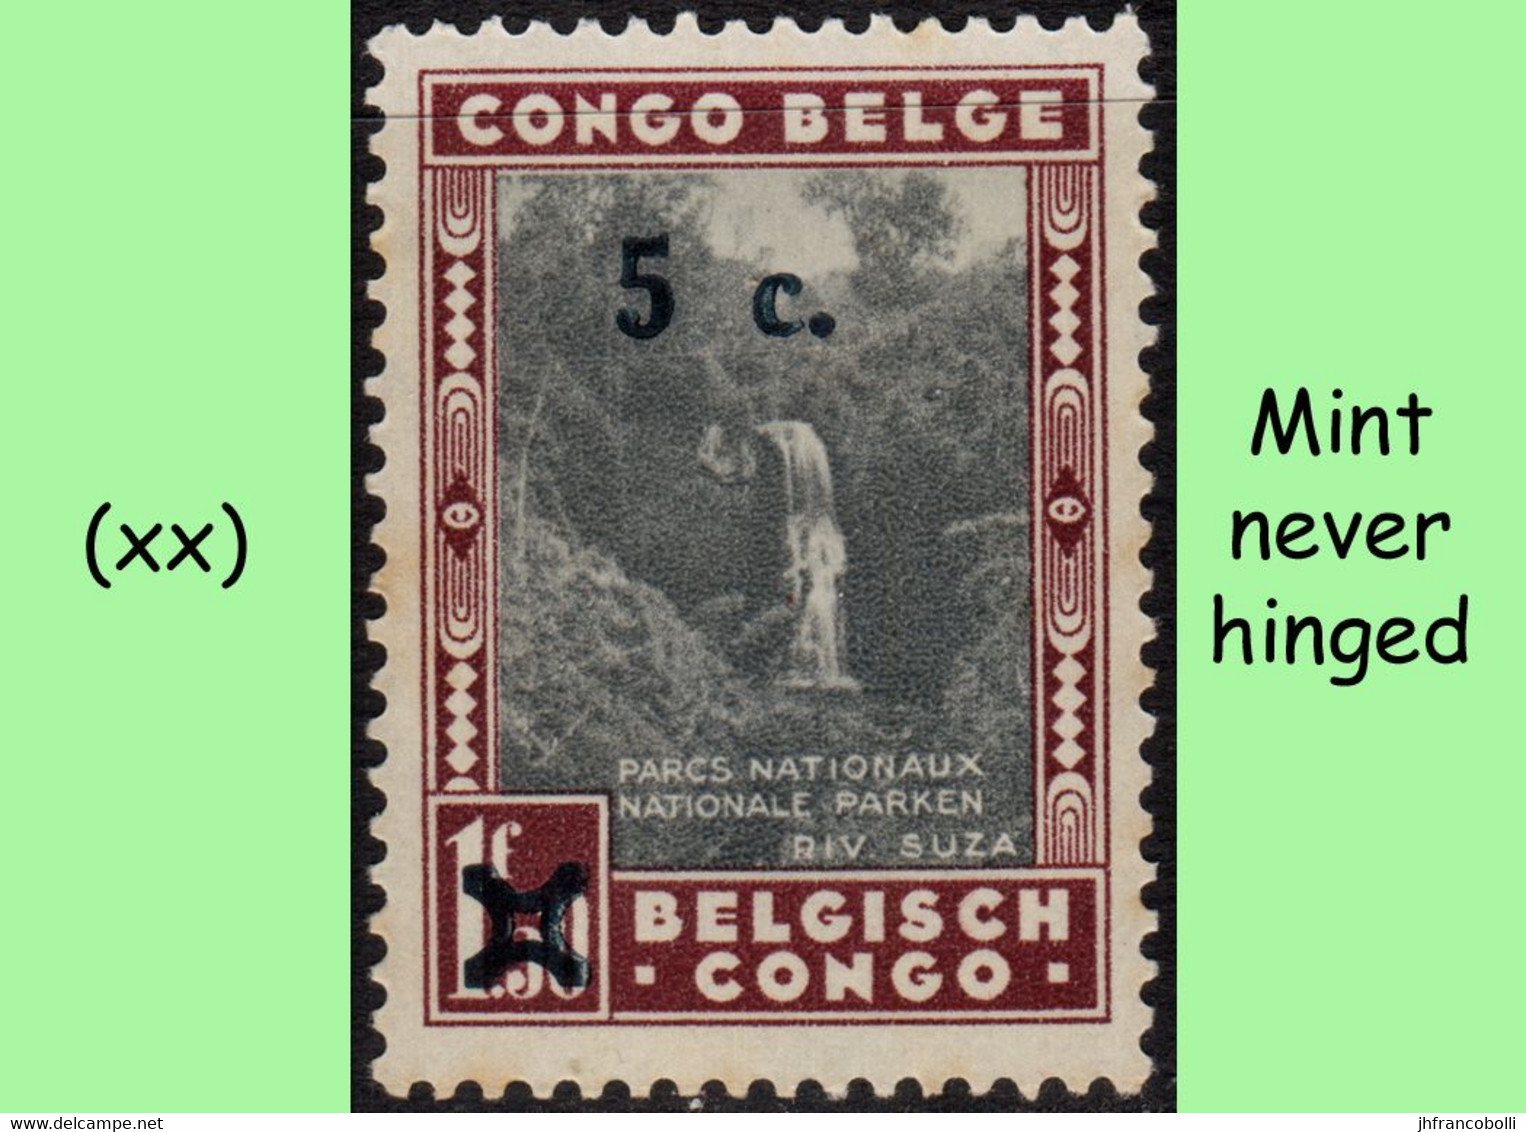 1941 ** BELGIAN CONGO / CONGO BELGE = COB 226 MNH SUZA RIVER = ANGLE BLOCK OF -4- STAMPS WITH ORIGINAL GUM - Blocs